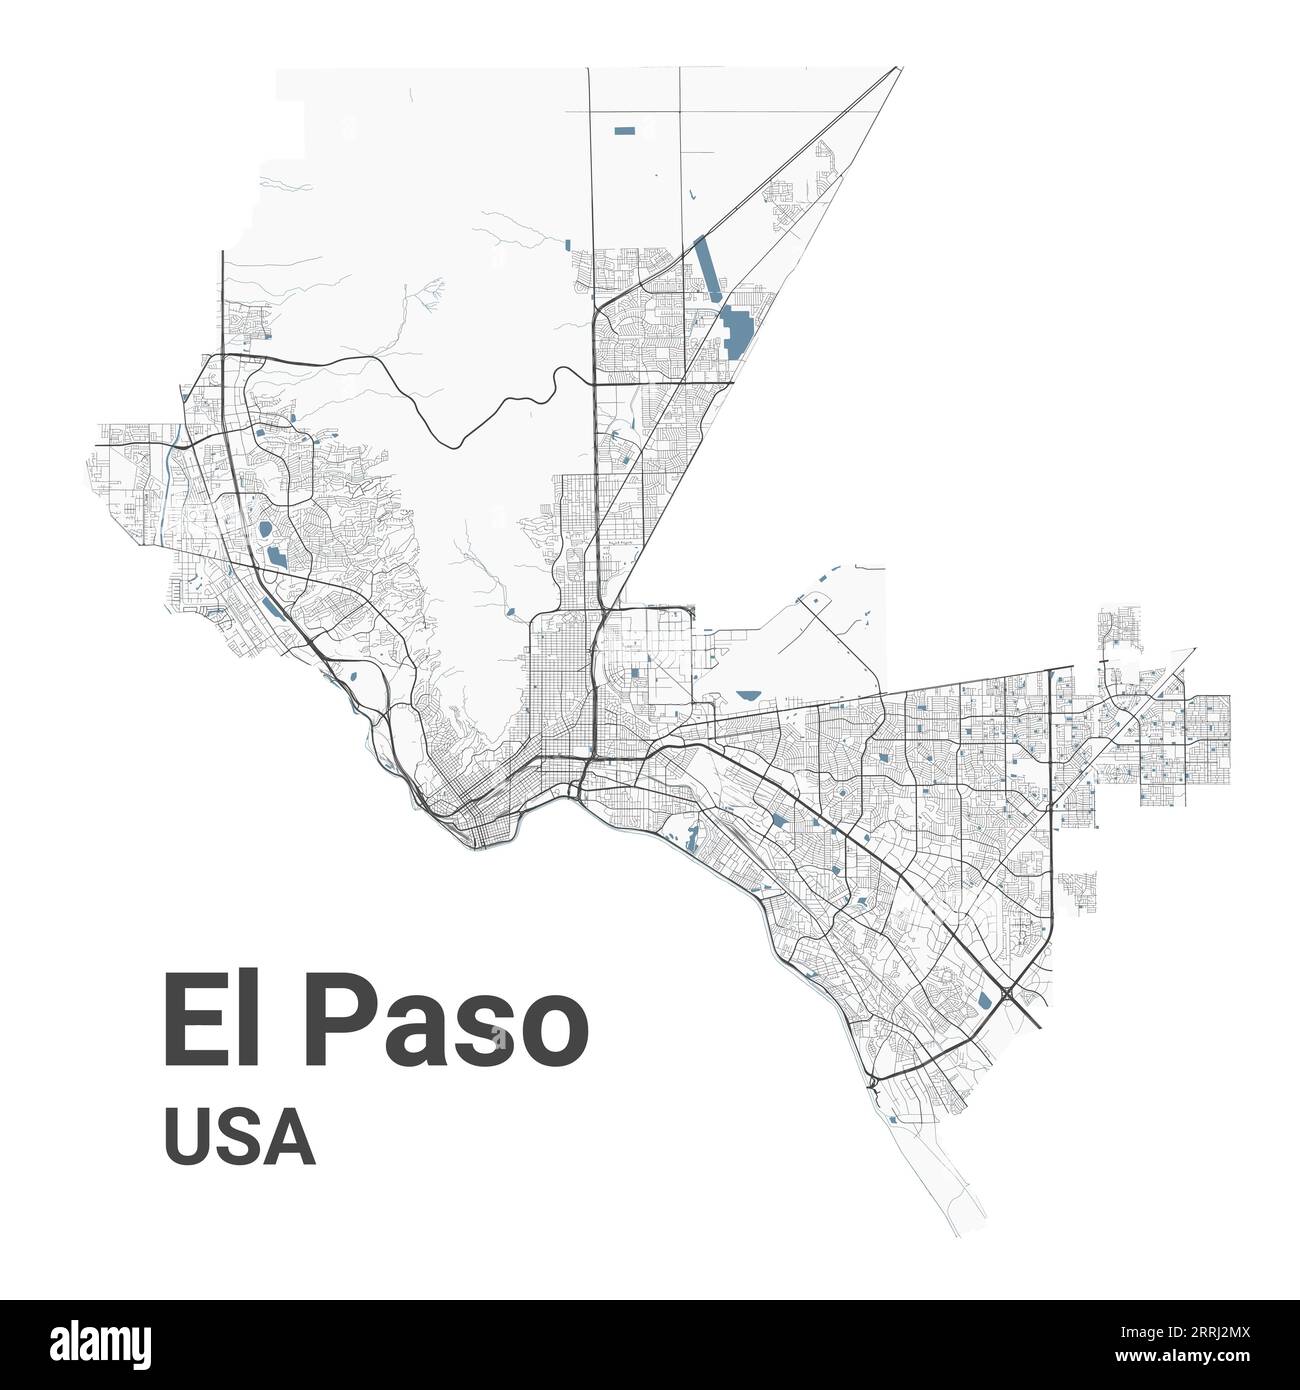 Mappa di El Paso, città americana. Mappa dell'area amministrativa comunale con fiumi e strade, parchi e ferrovie. Illustrazione vettoriale. Illustrazione Vettoriale